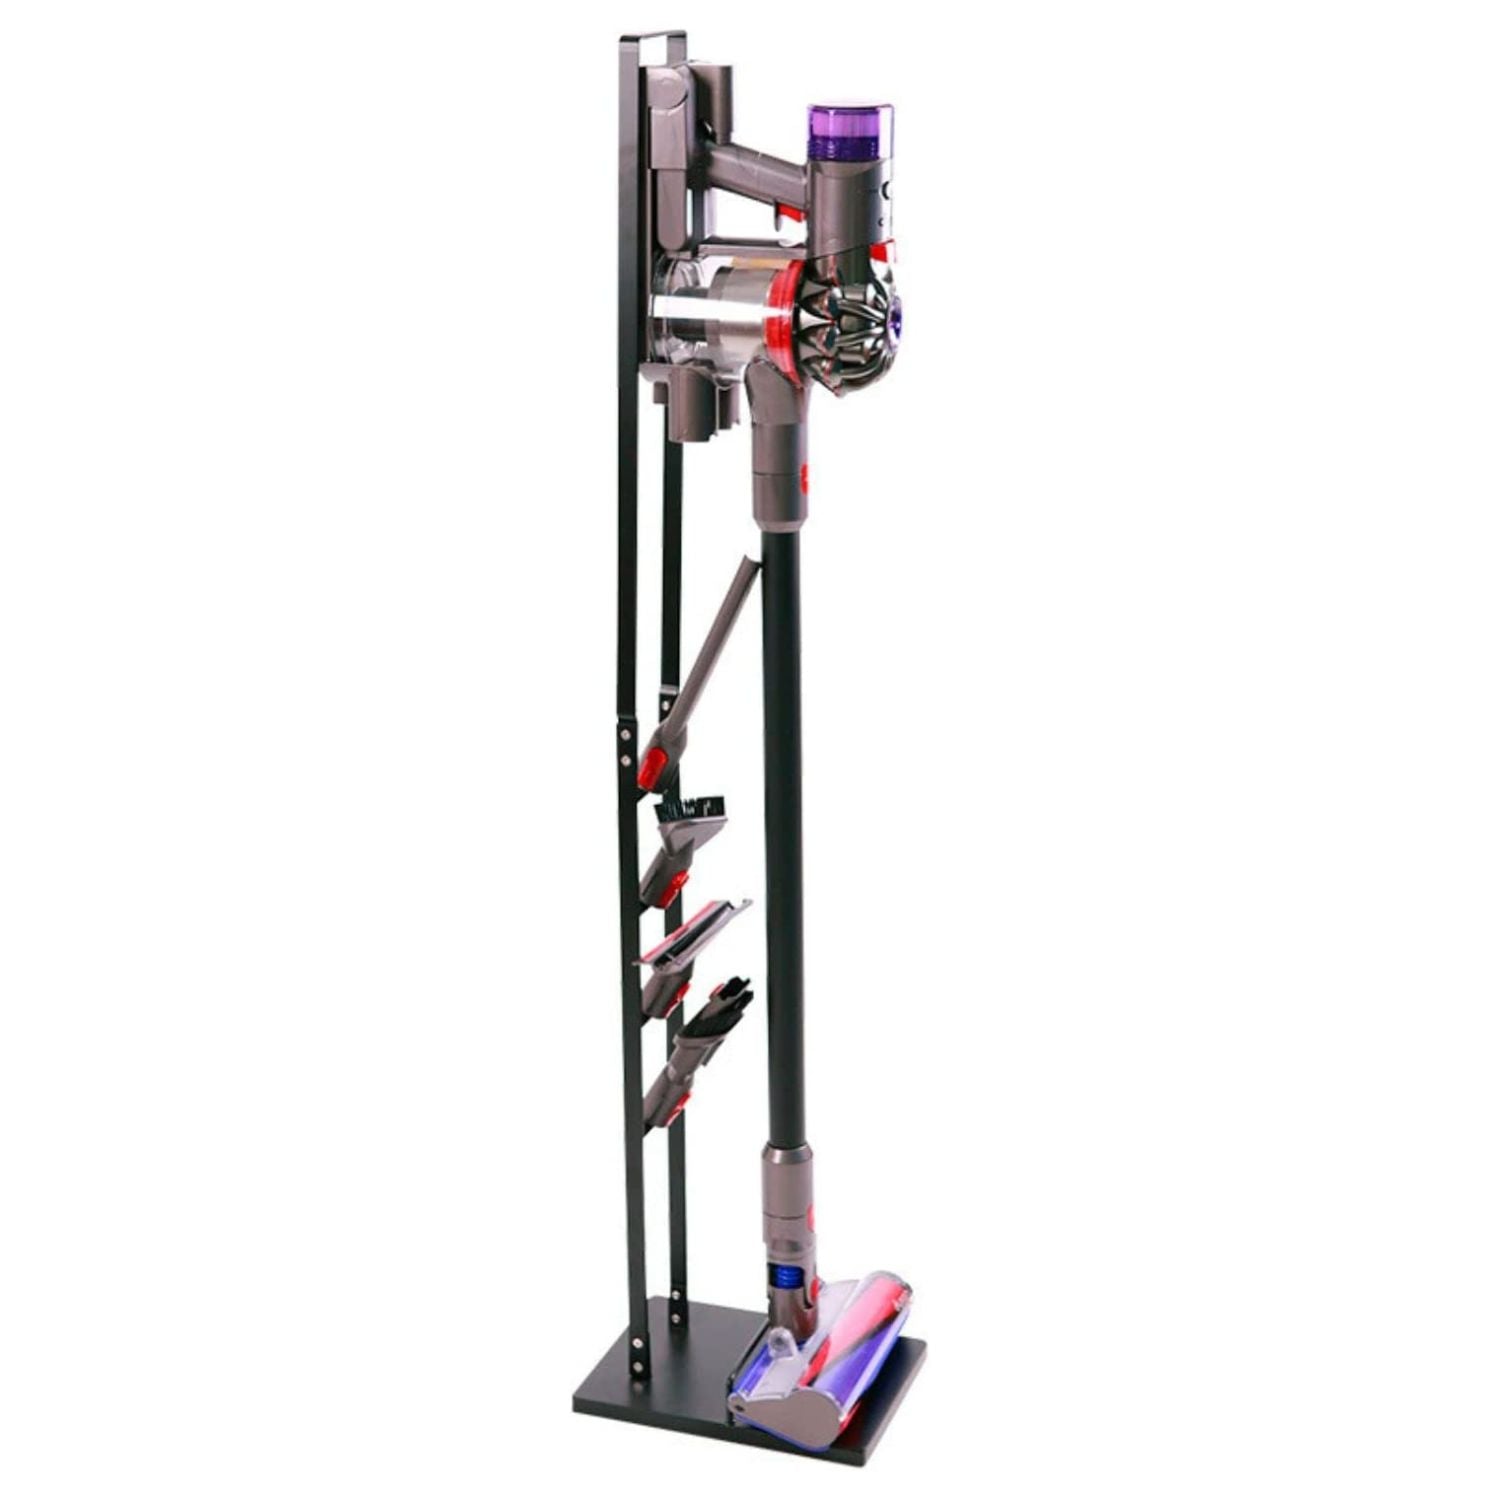 GOMINIMO Freestanding Dyson Vacuum Cleaner Stand Rack Holder for Dyson V6 V7 V8 V10 V11 (Black)